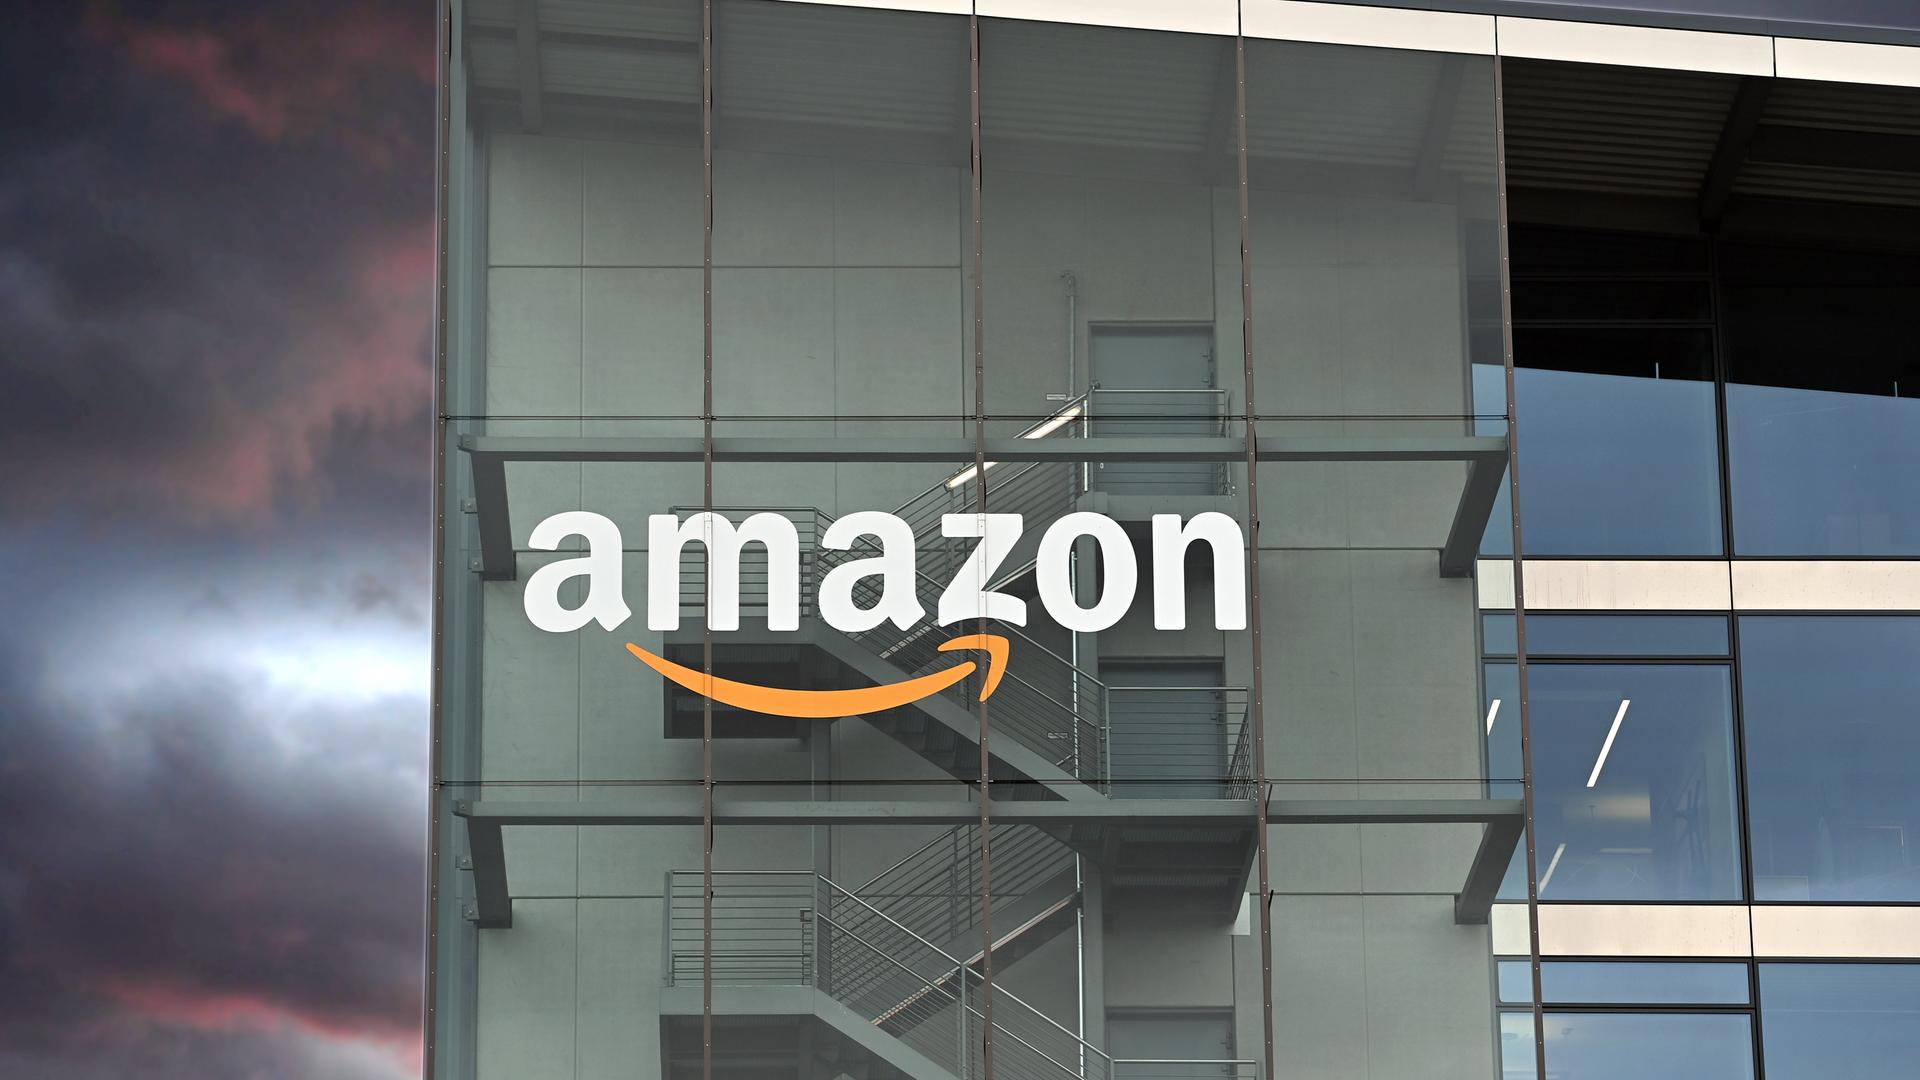 Die Fassade der Amazon Deutschland Zentrale in München mit dem Firmen-Logo.